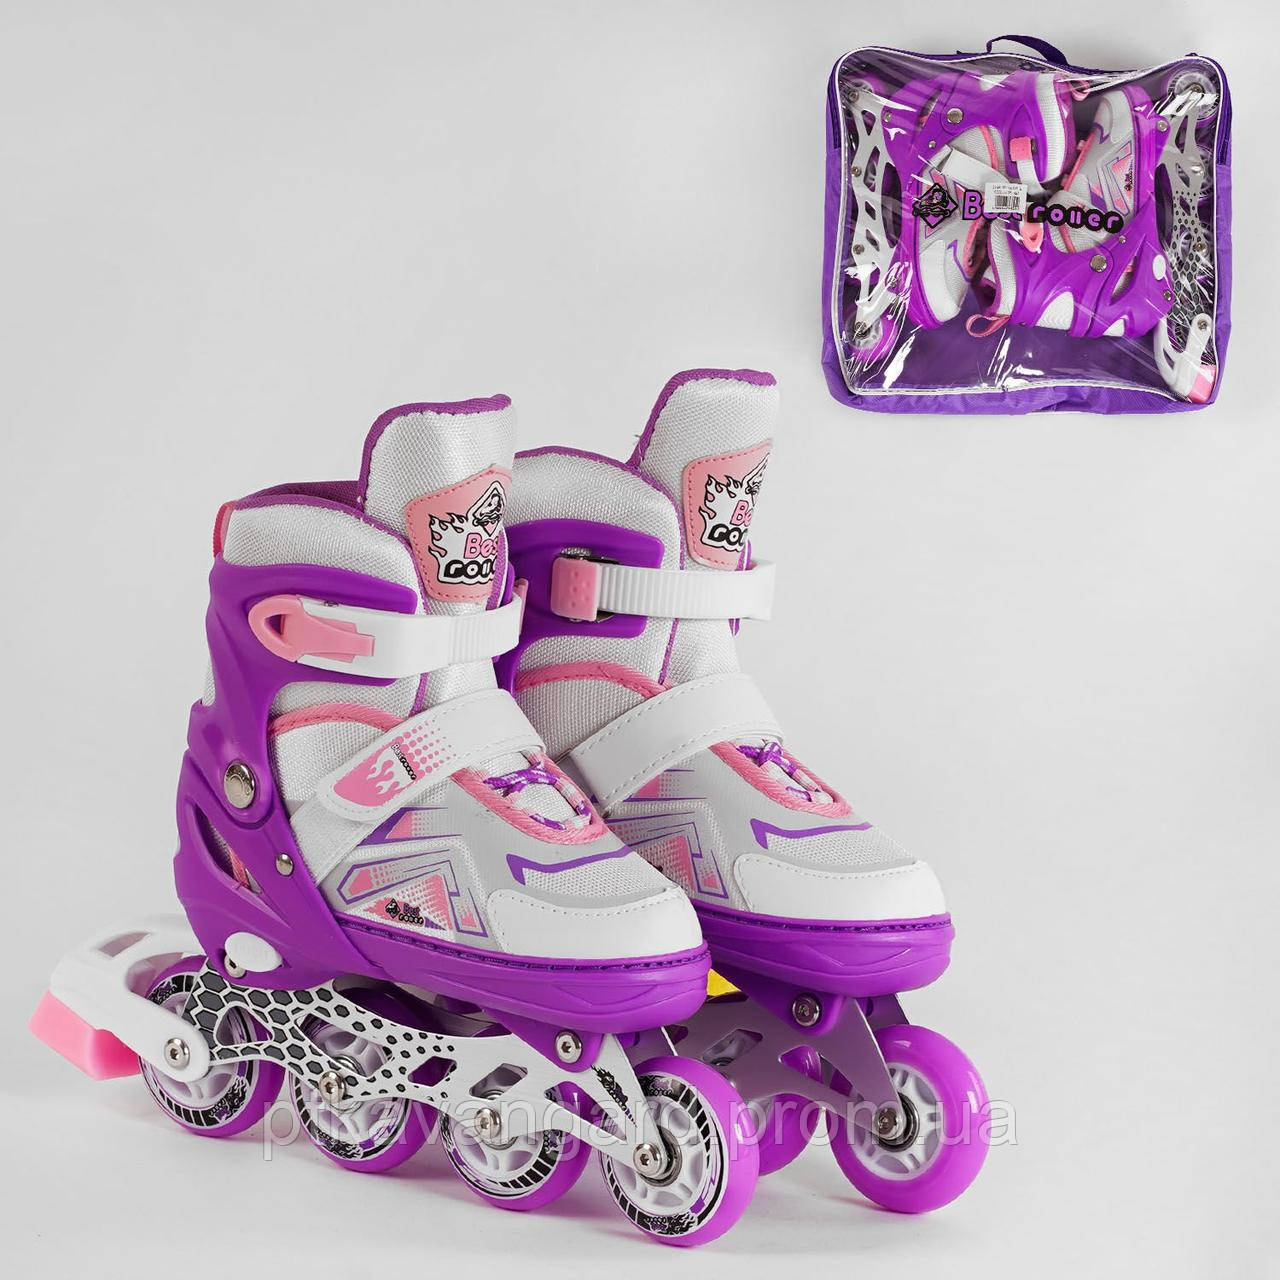 Дитячі ролики (роликові ковзани) Фіолетовий для дівчаток розмір 34-37 (М) Best Roller колеса PU